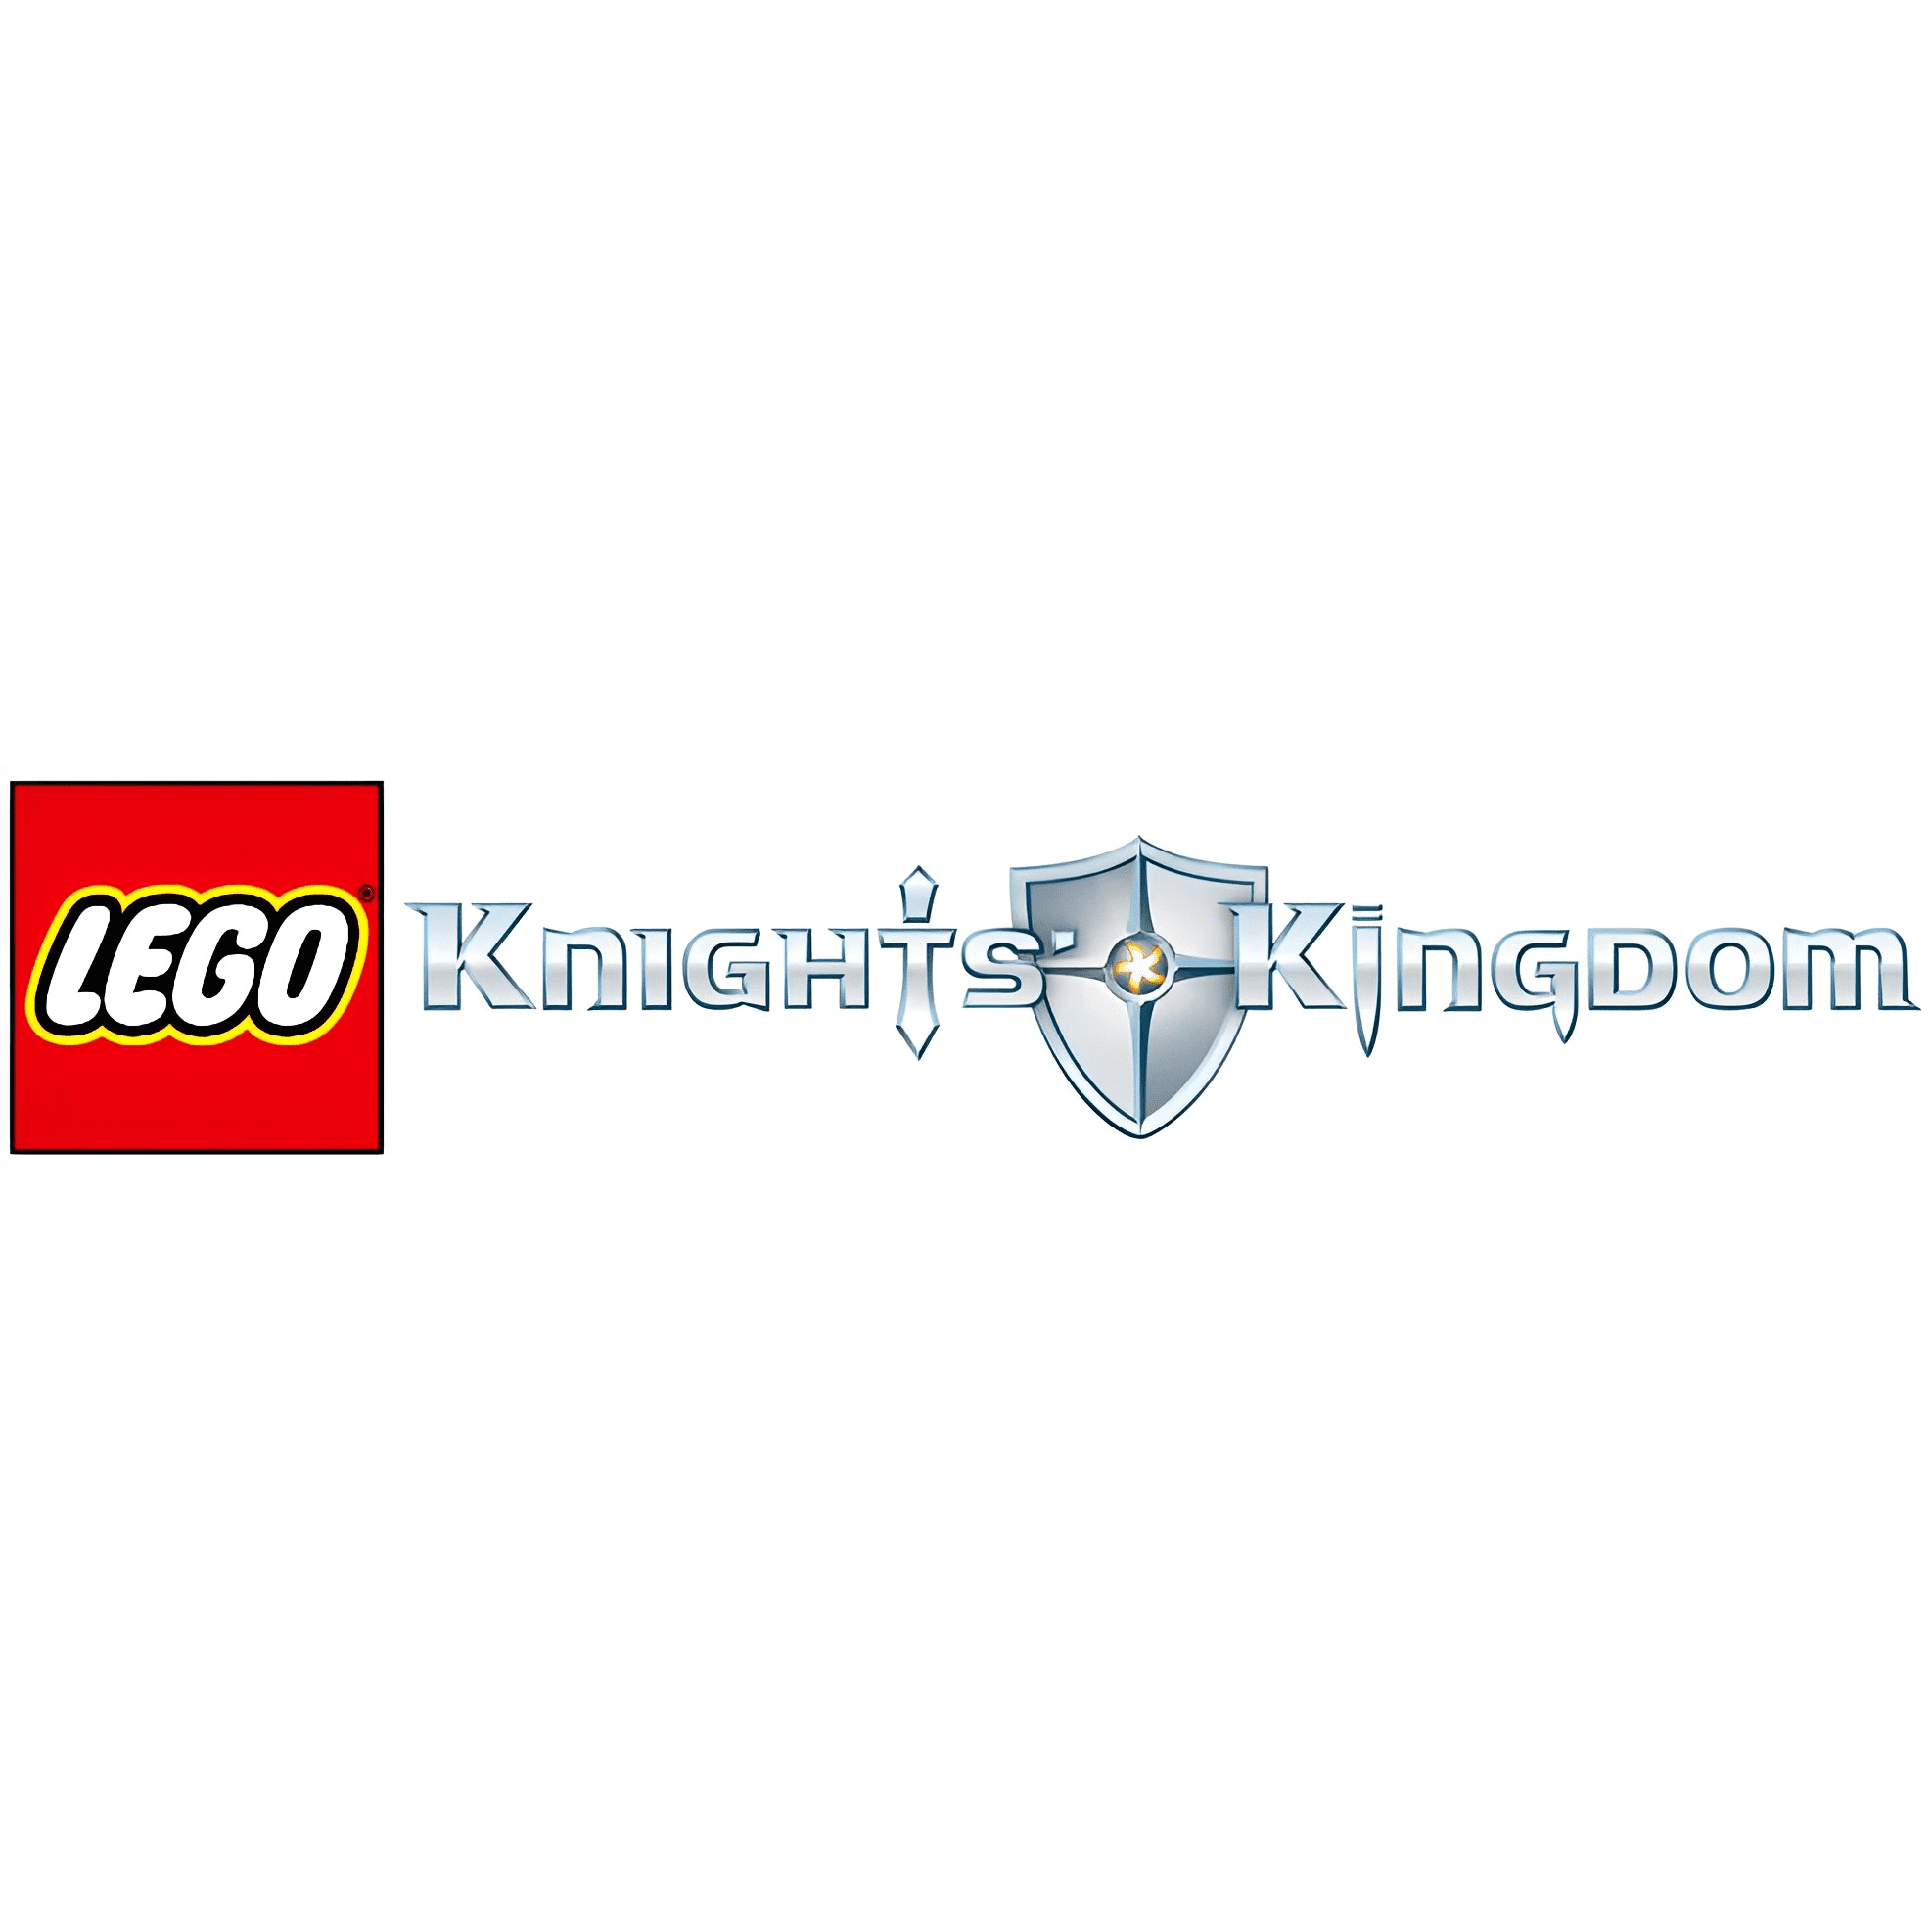 LEGO - Knights' Kingdom Sets